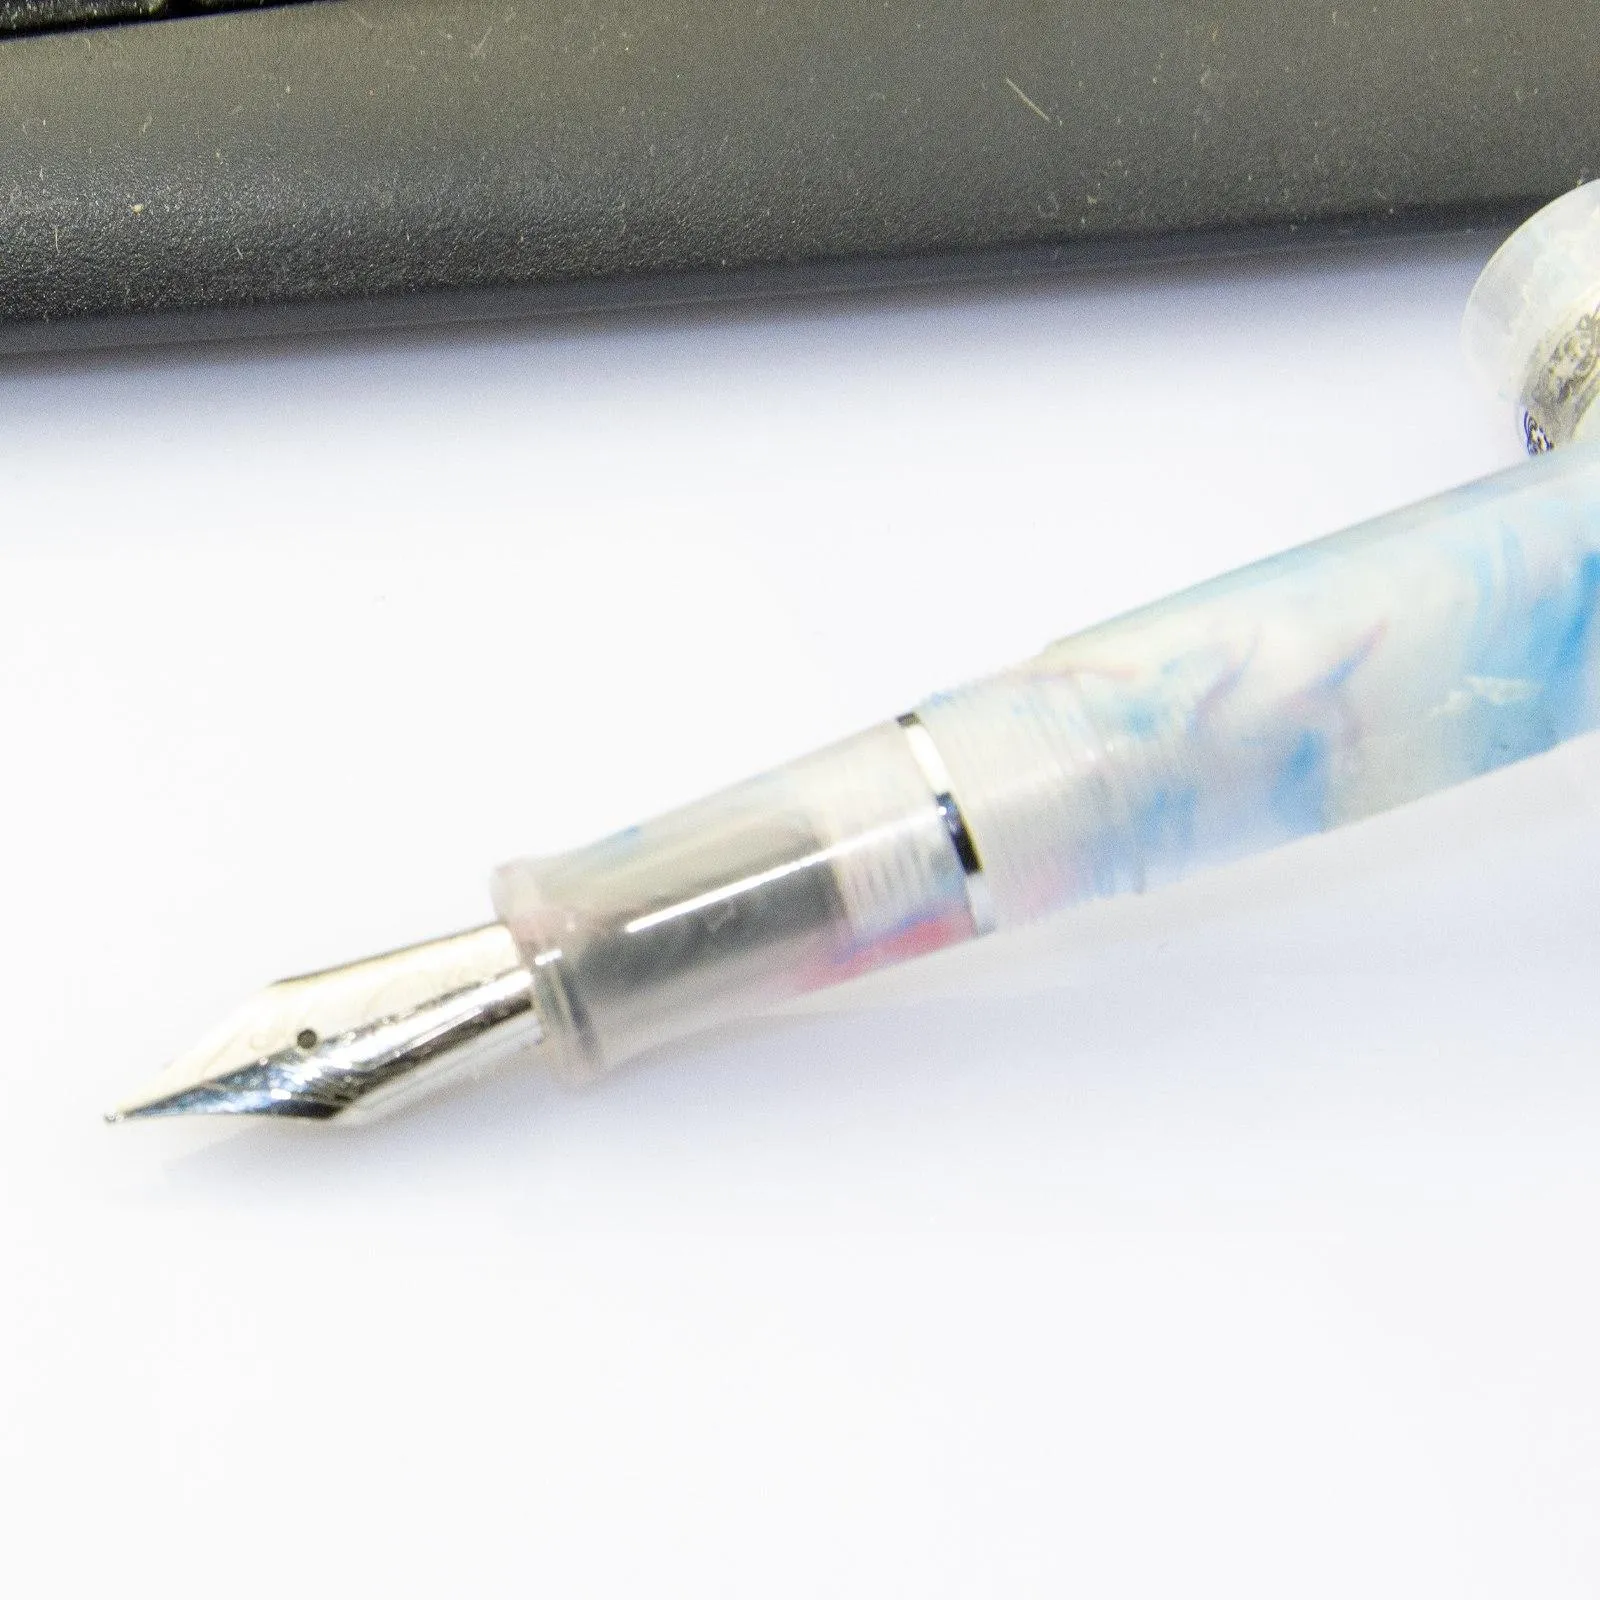 Pens kaigelu 316a celulóide caneta linda pinkwhite iridium ef/f/m benging writing caneta de caneta de caneta de caneta de negócios